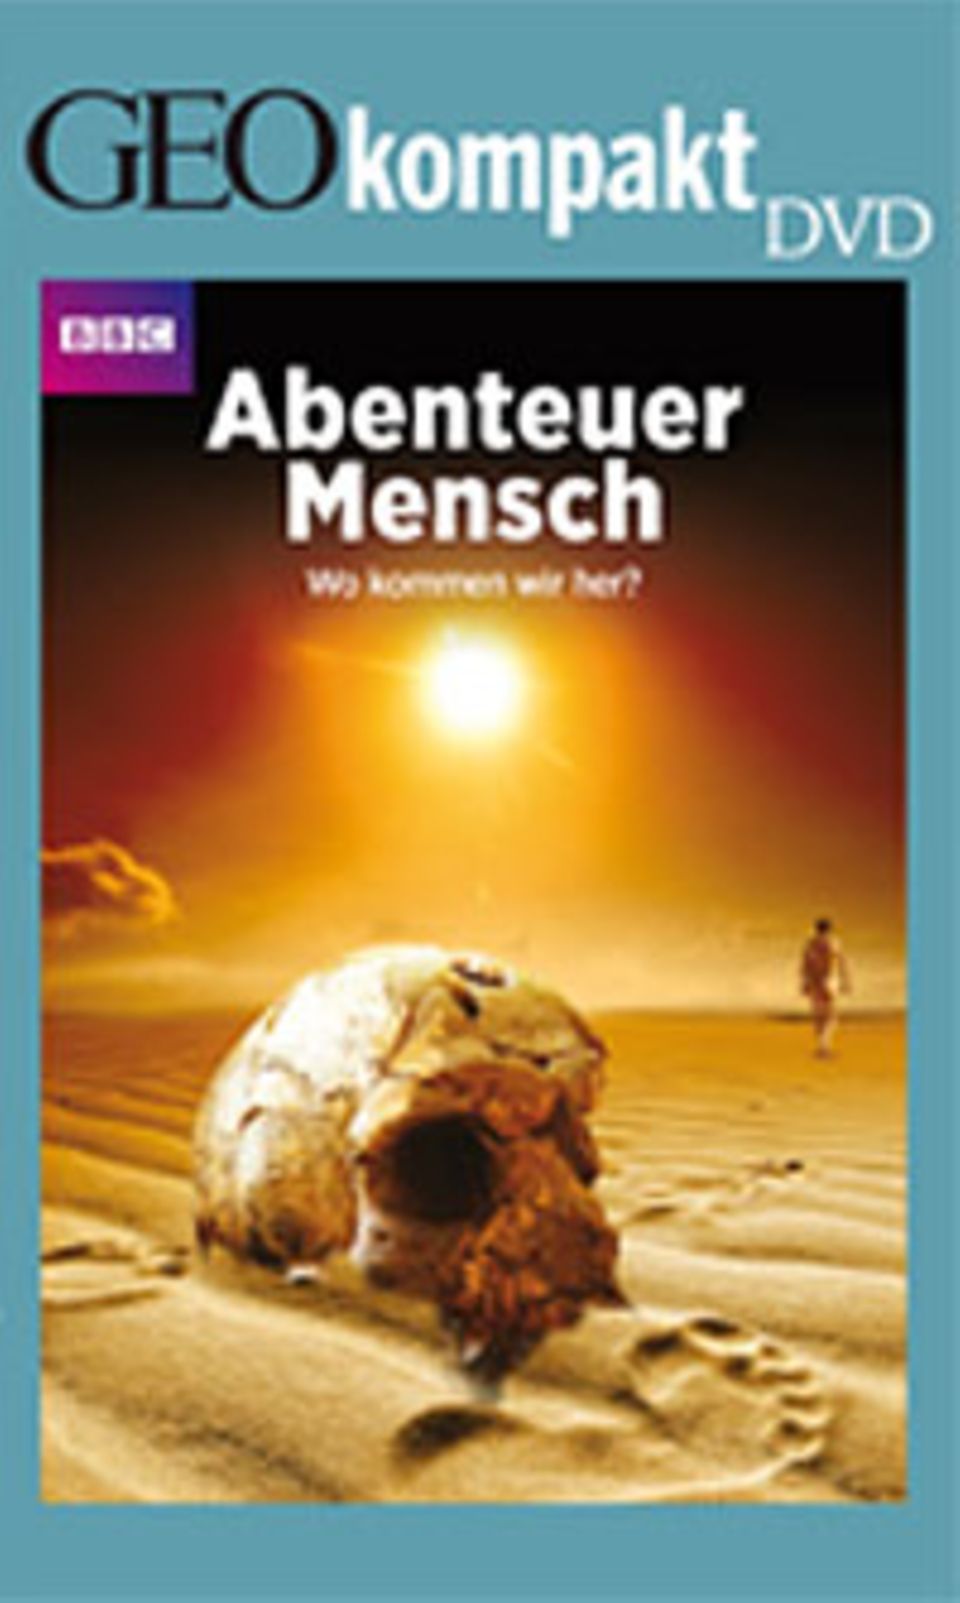 GEOkompakt-DVD: Abenteuer Mensch